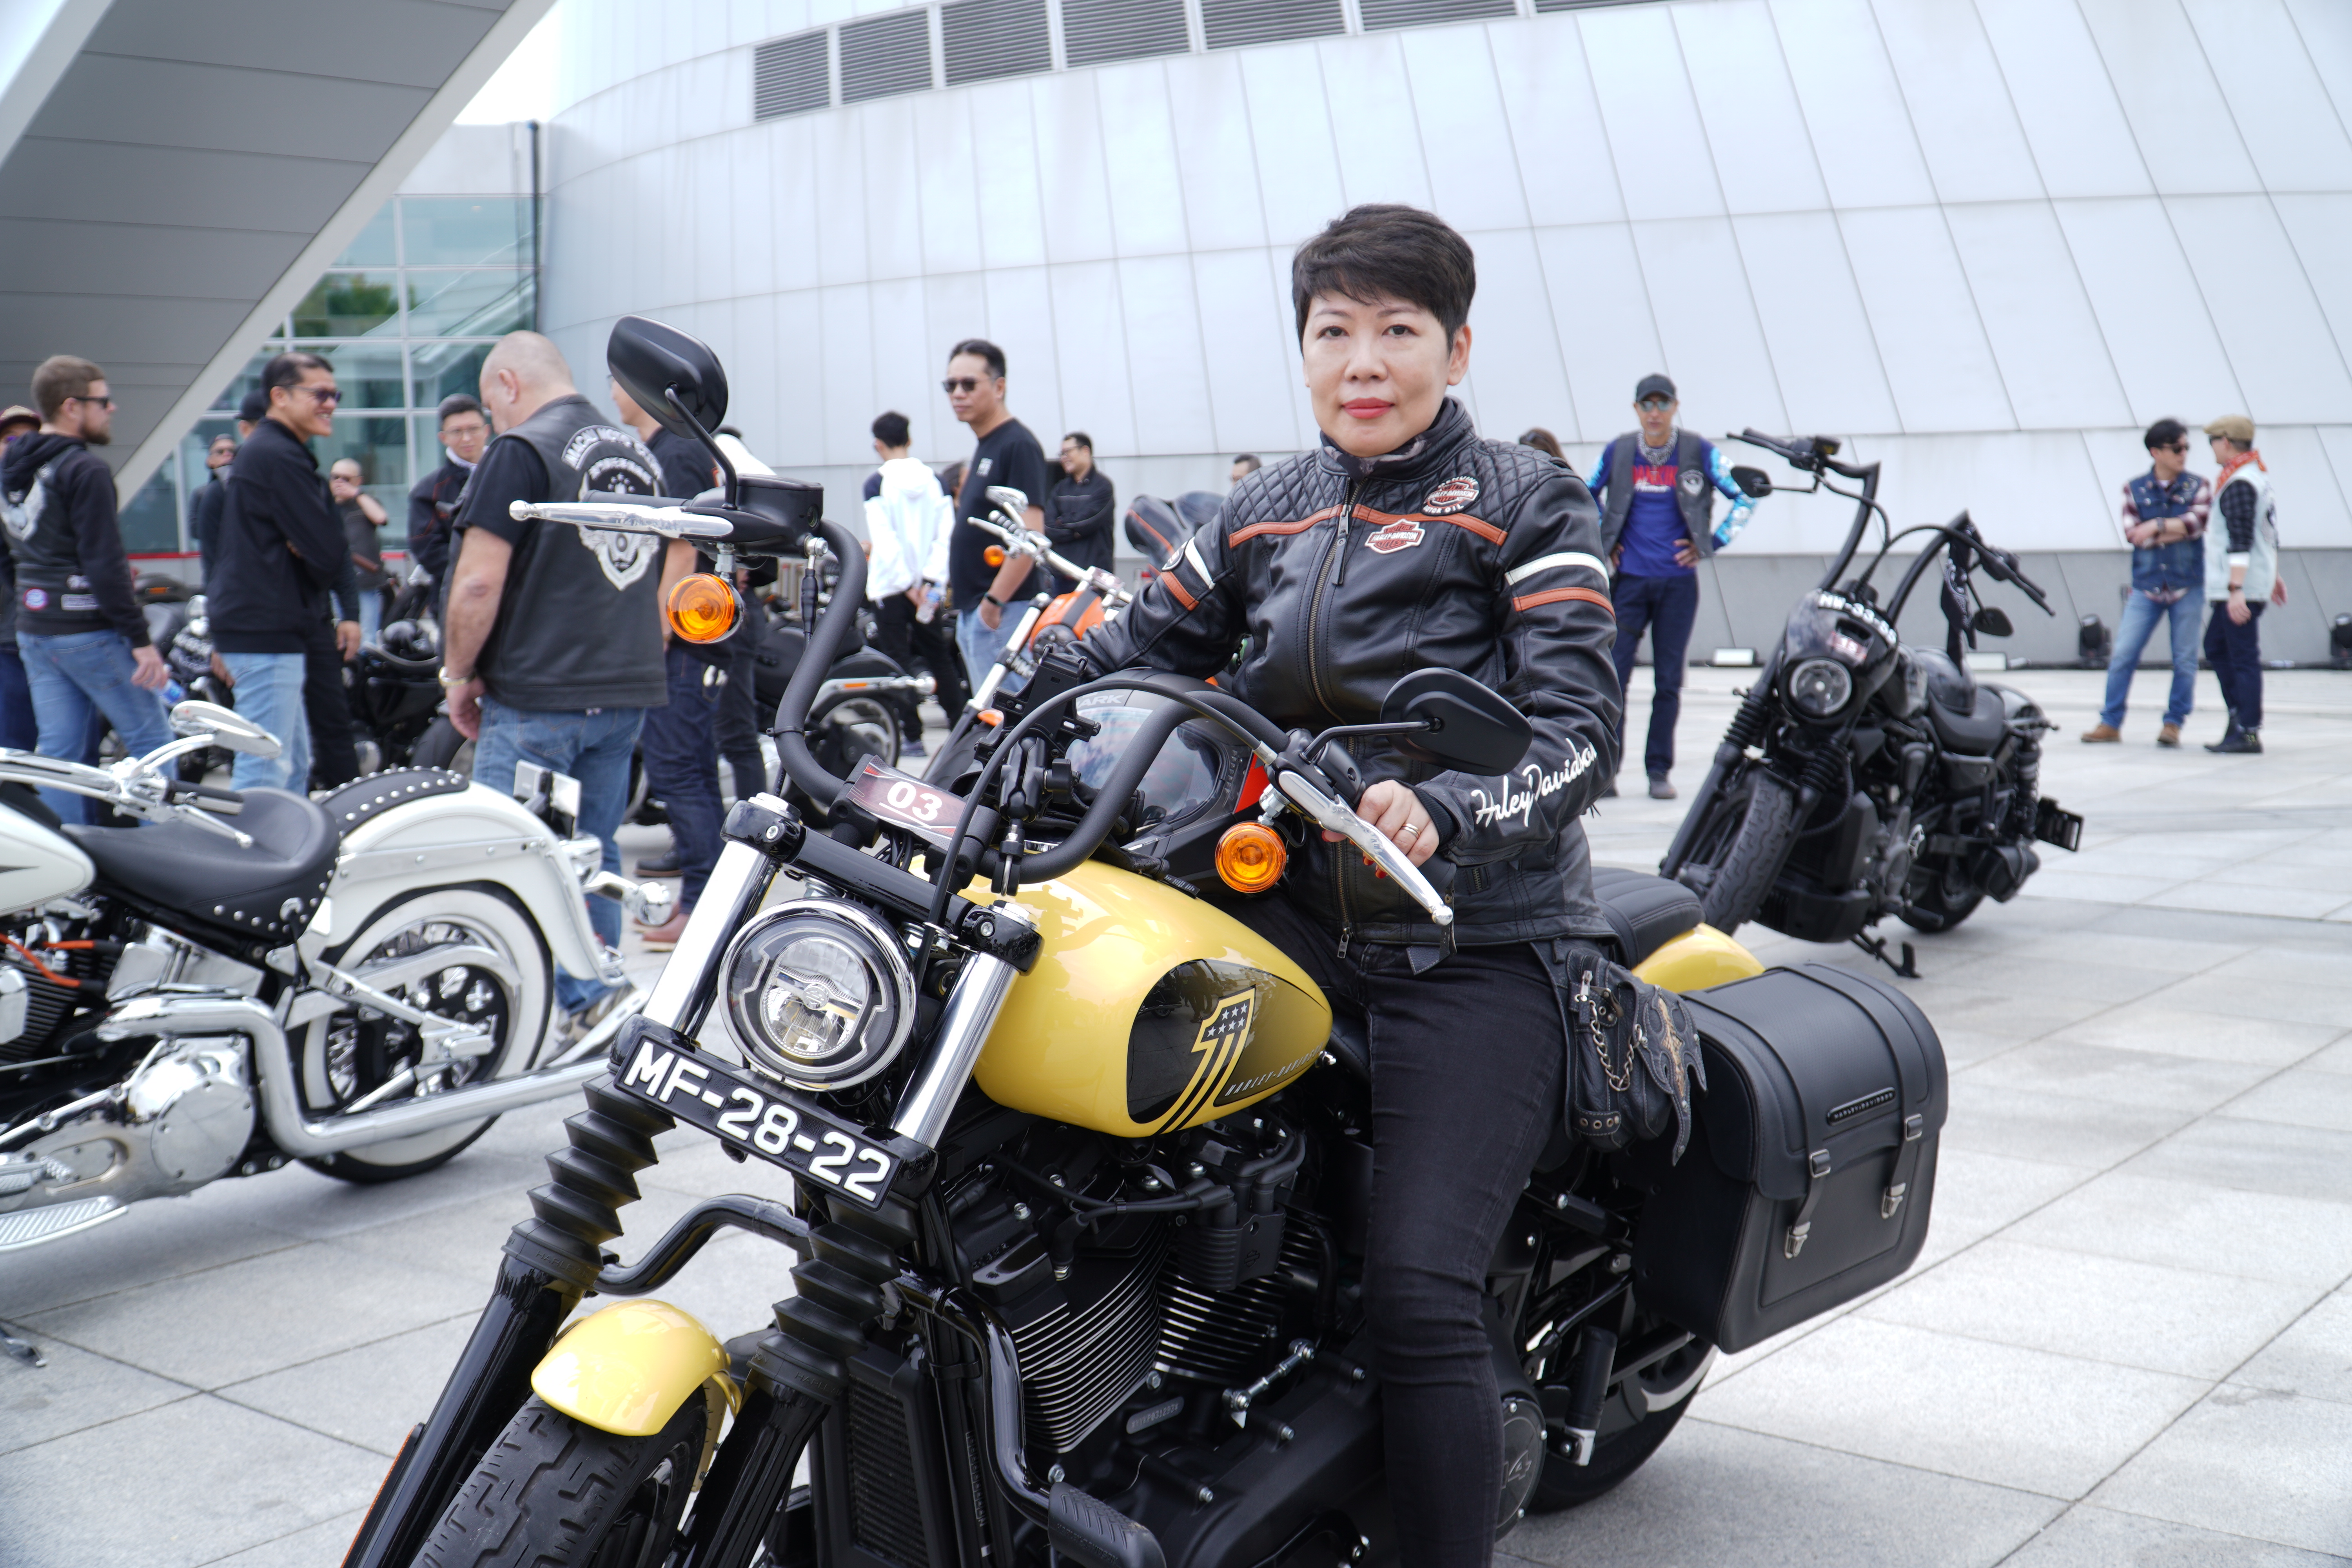 C1  吳女士認為這類型的活動有助市民了解摩托車文化.JPG